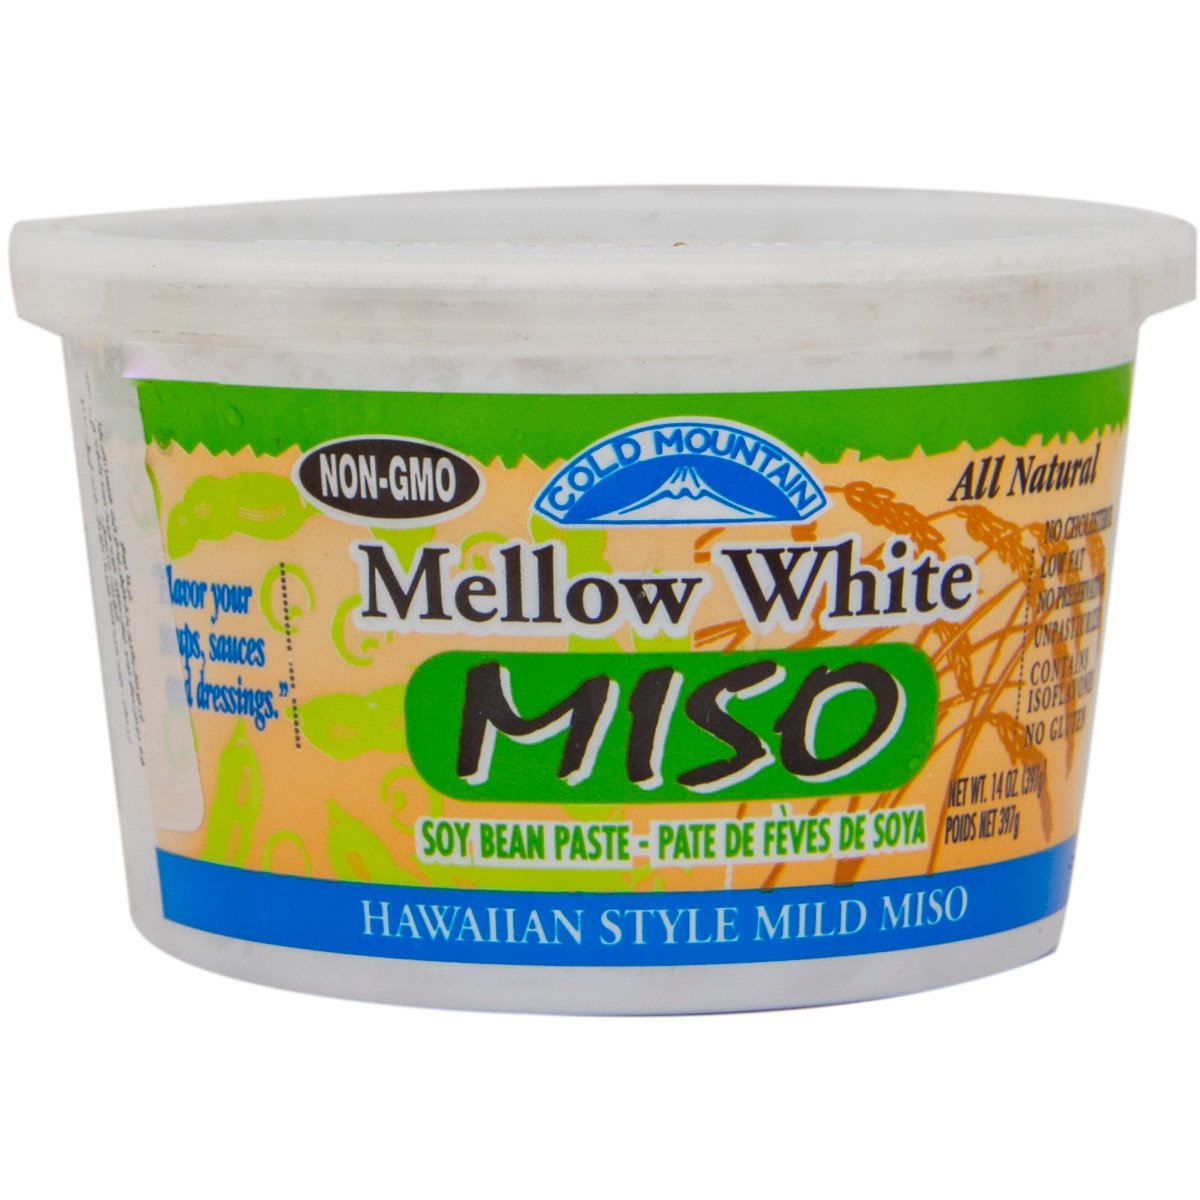 Cold Mountain Mellow White Miso 397 g